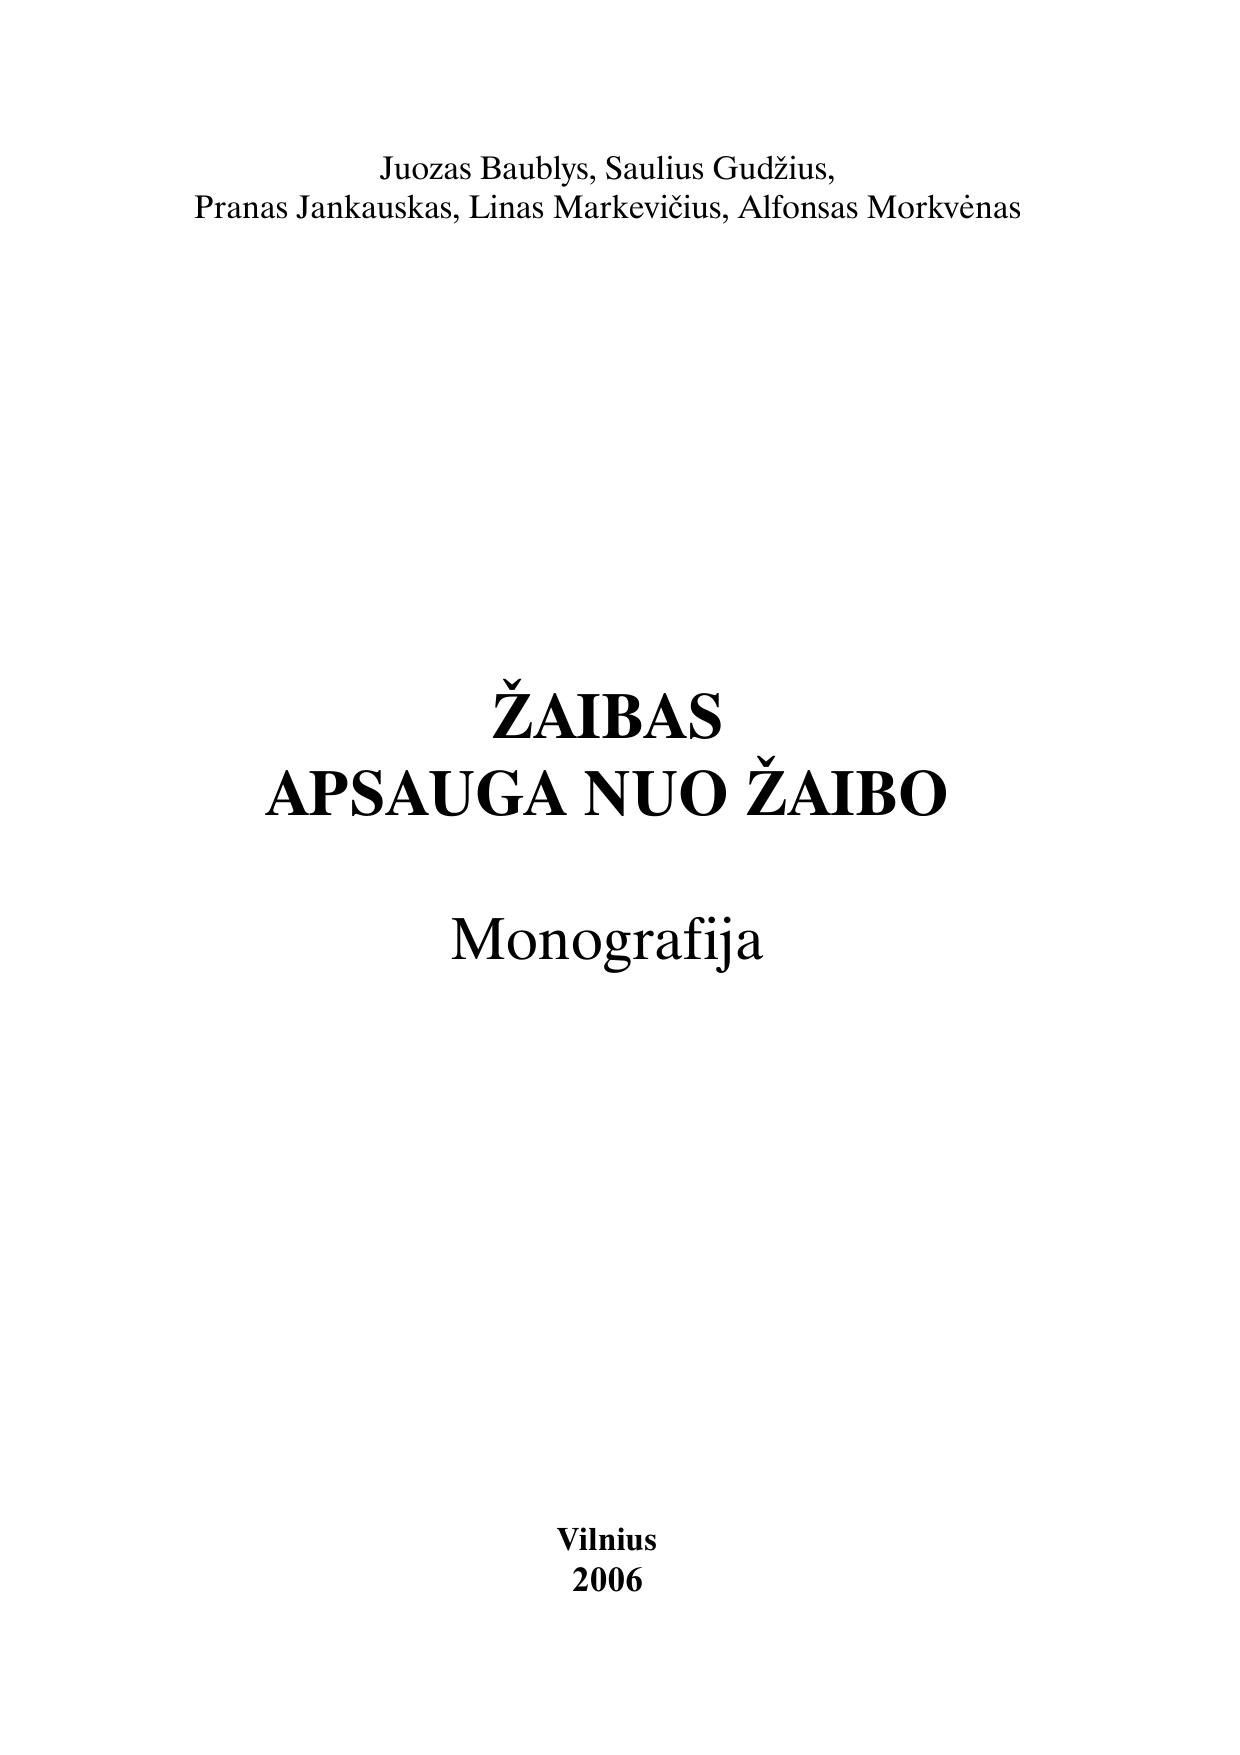 Microsoft Word - ZAIBAS111.doc